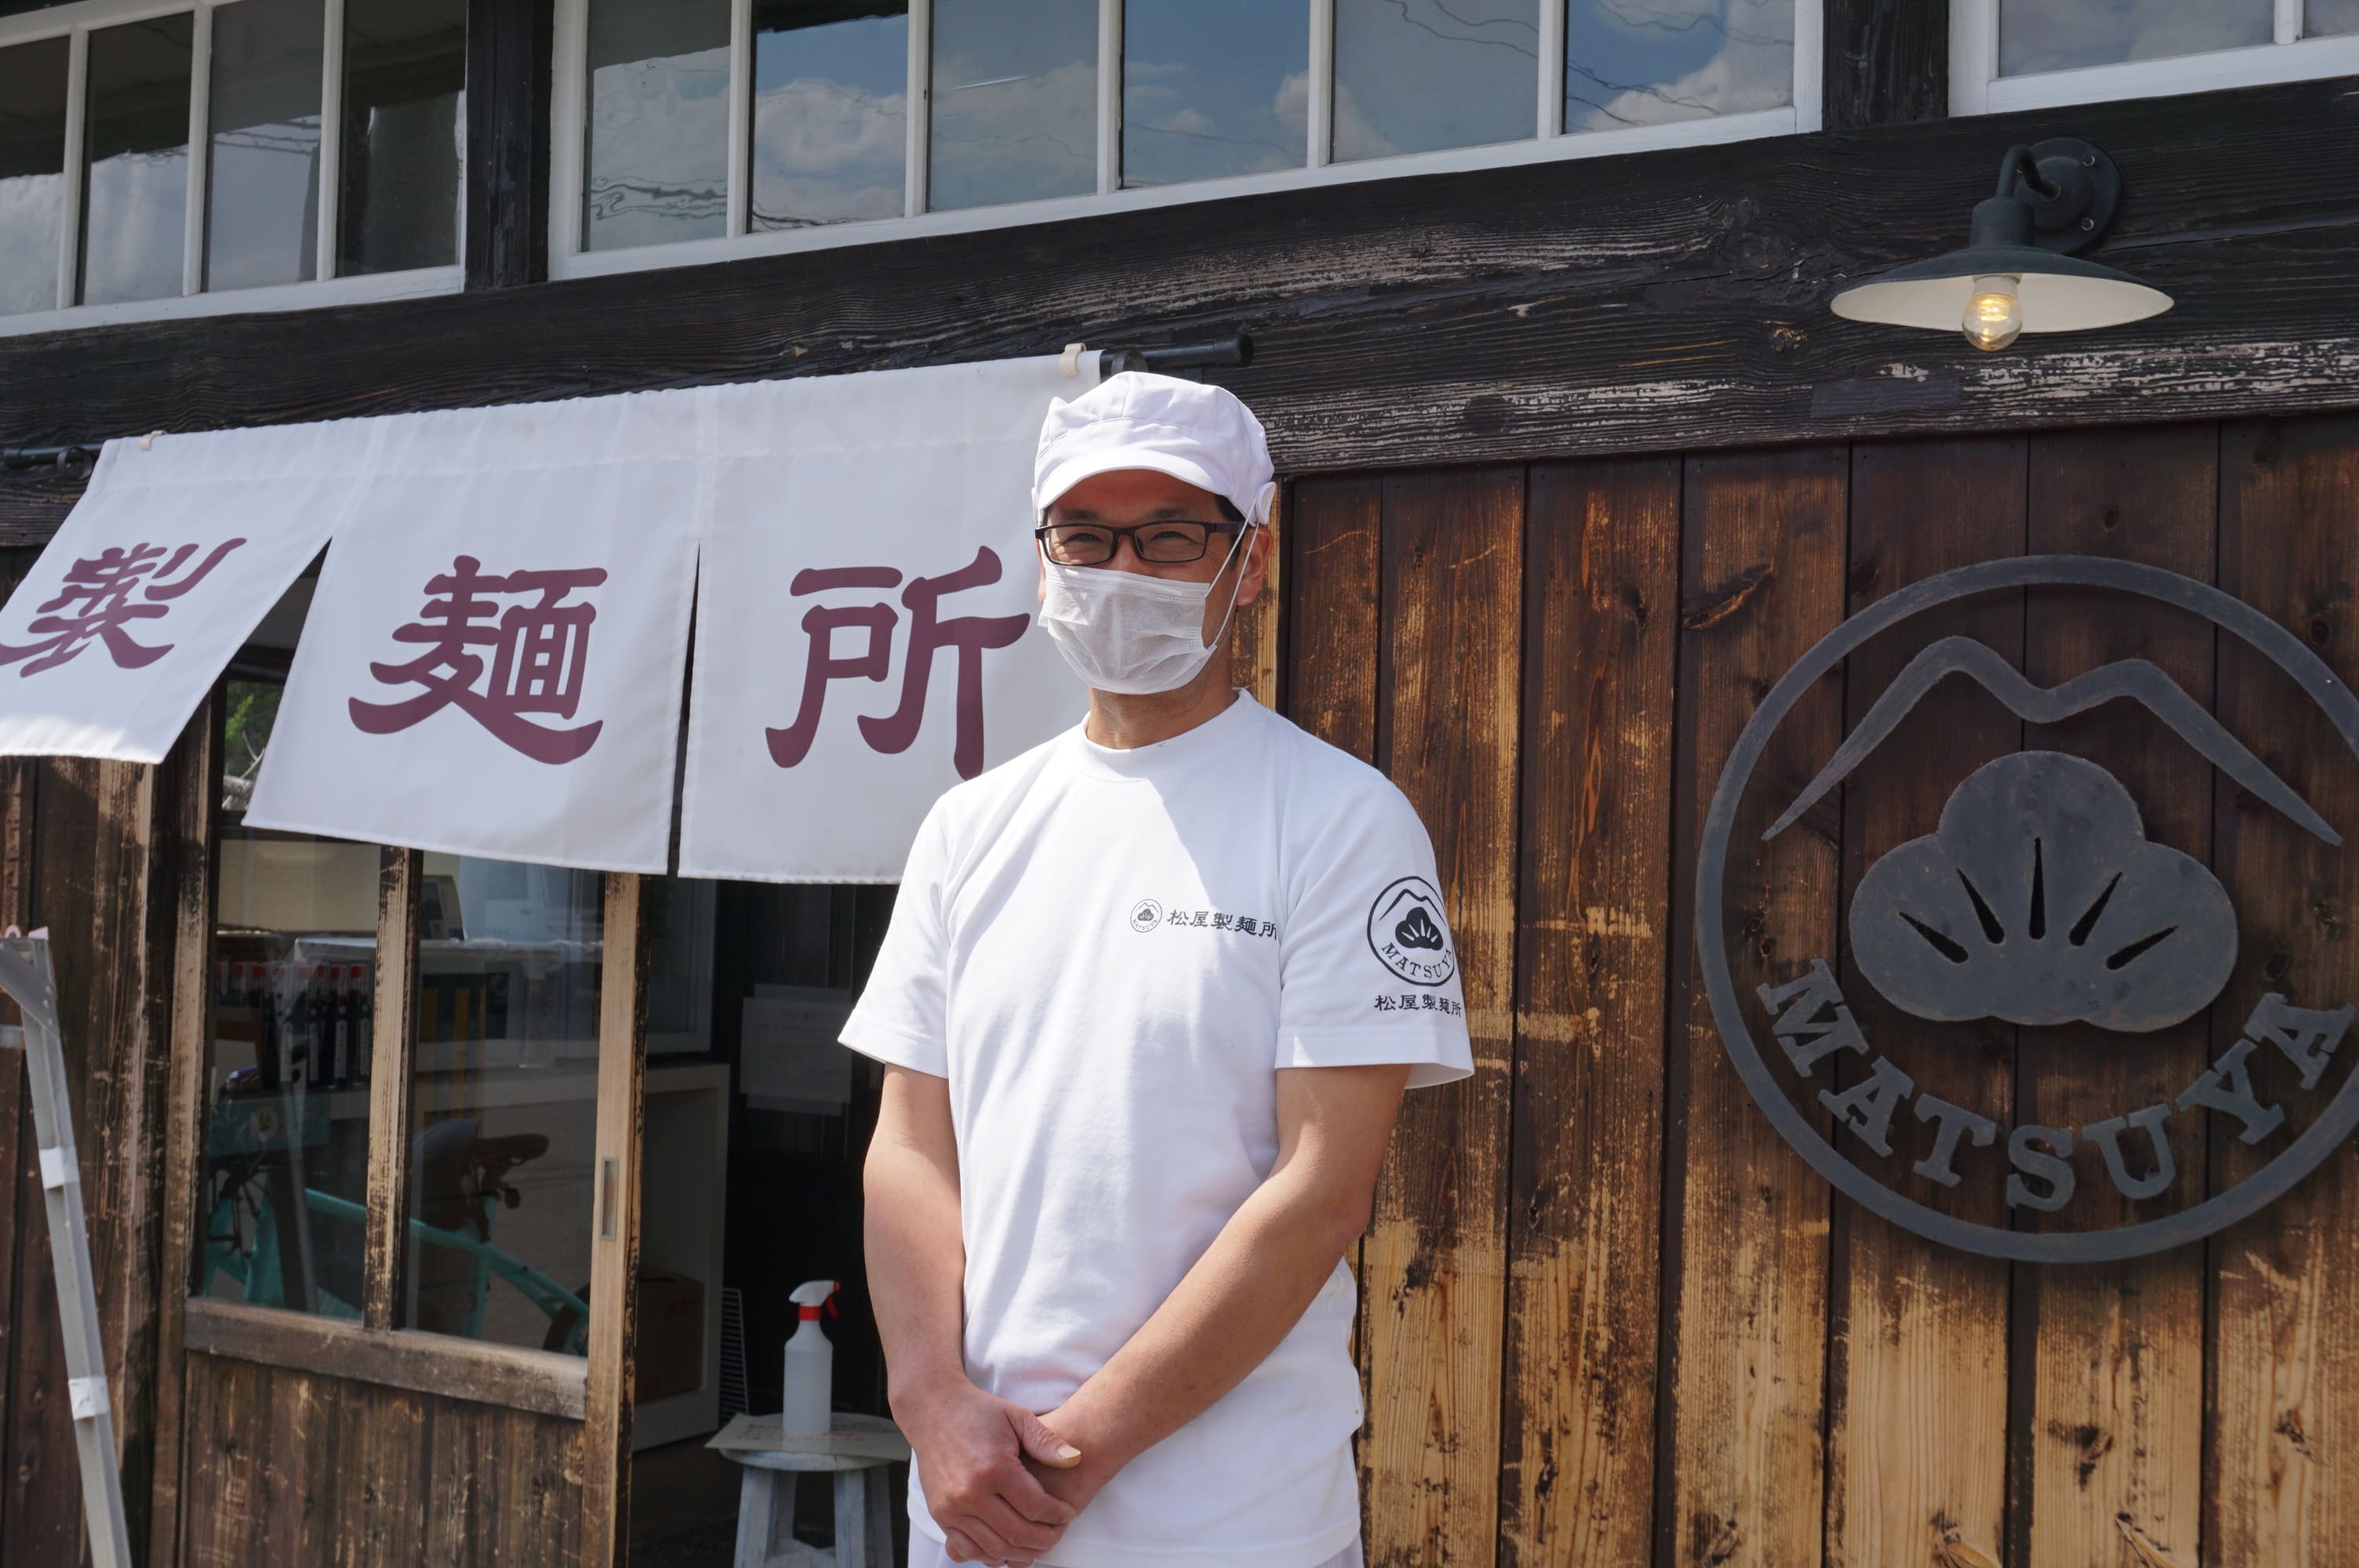 大正時代に建てられた土産店の佇まいに惚れ込んだという松屋製麺所の所長・川村能功さん。